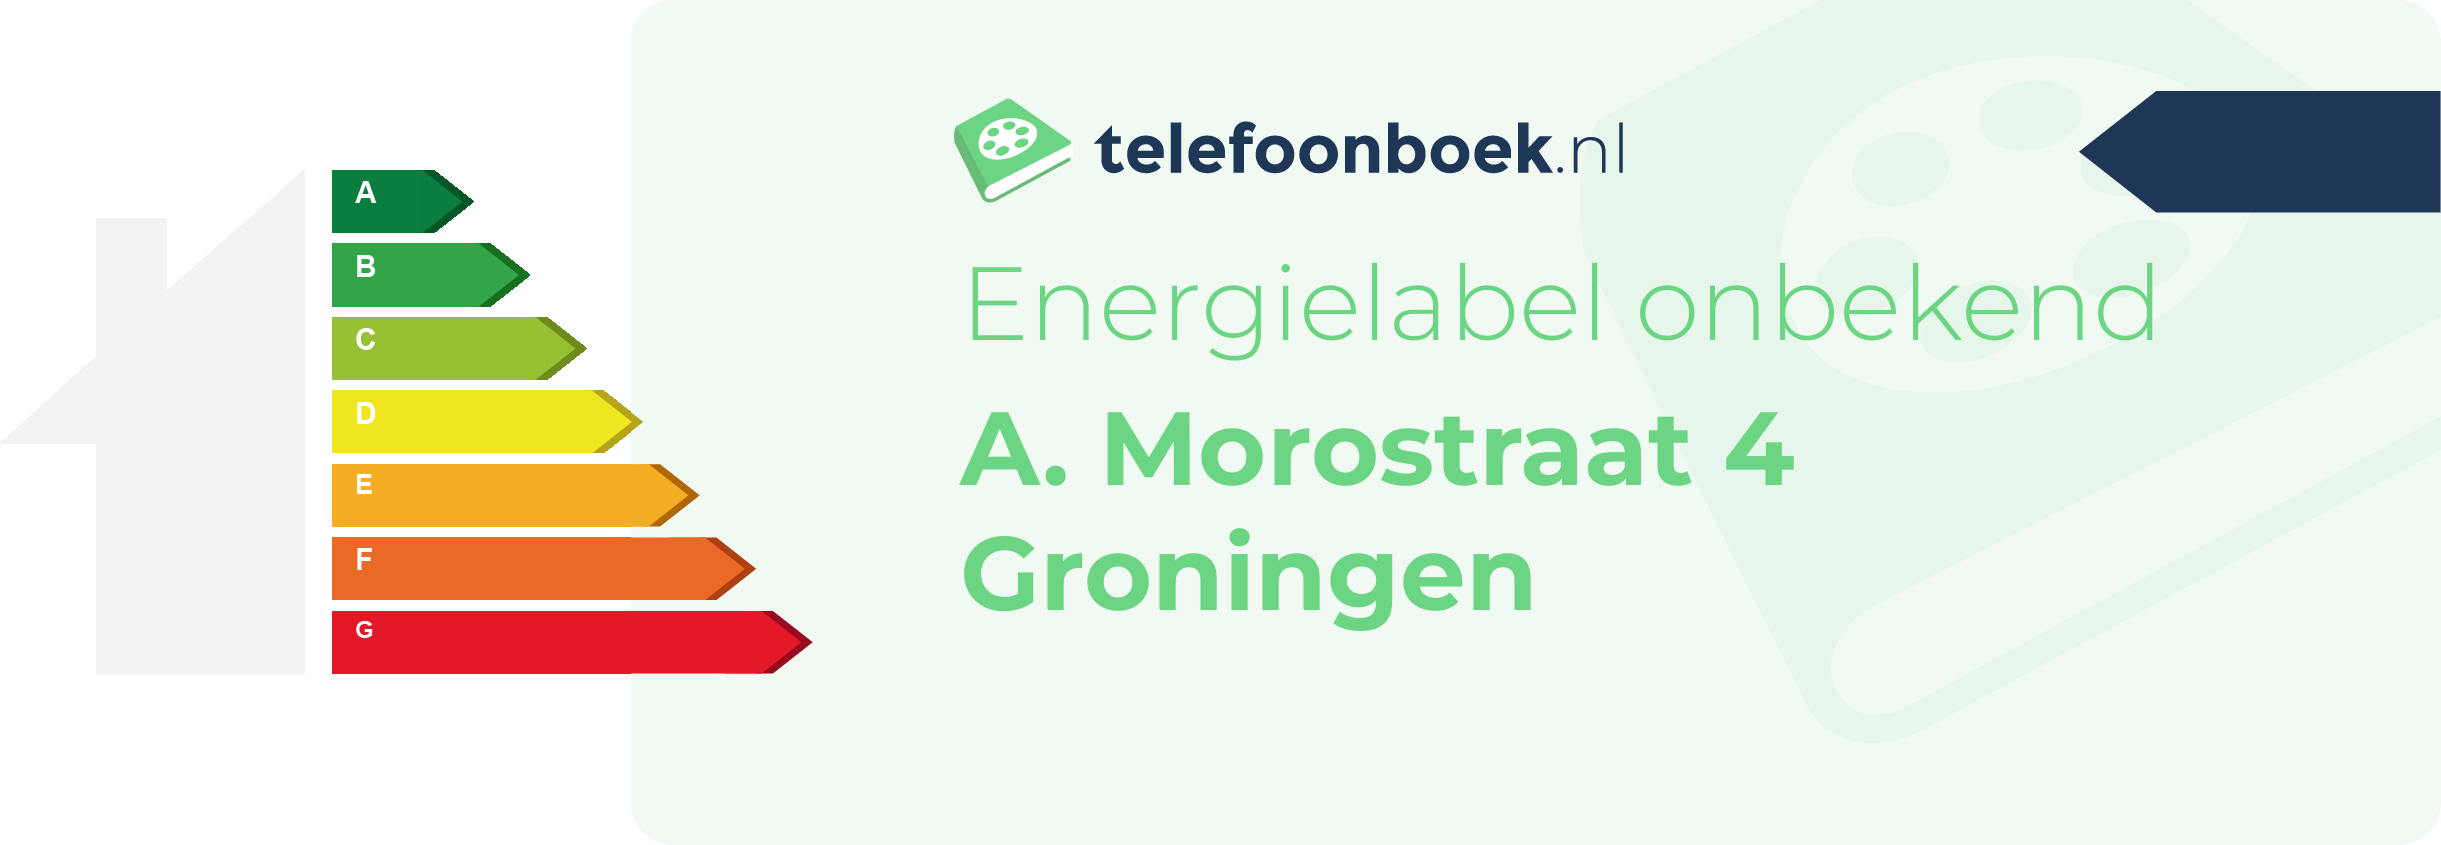 Energielabel A. Morostraat 4 Groningen